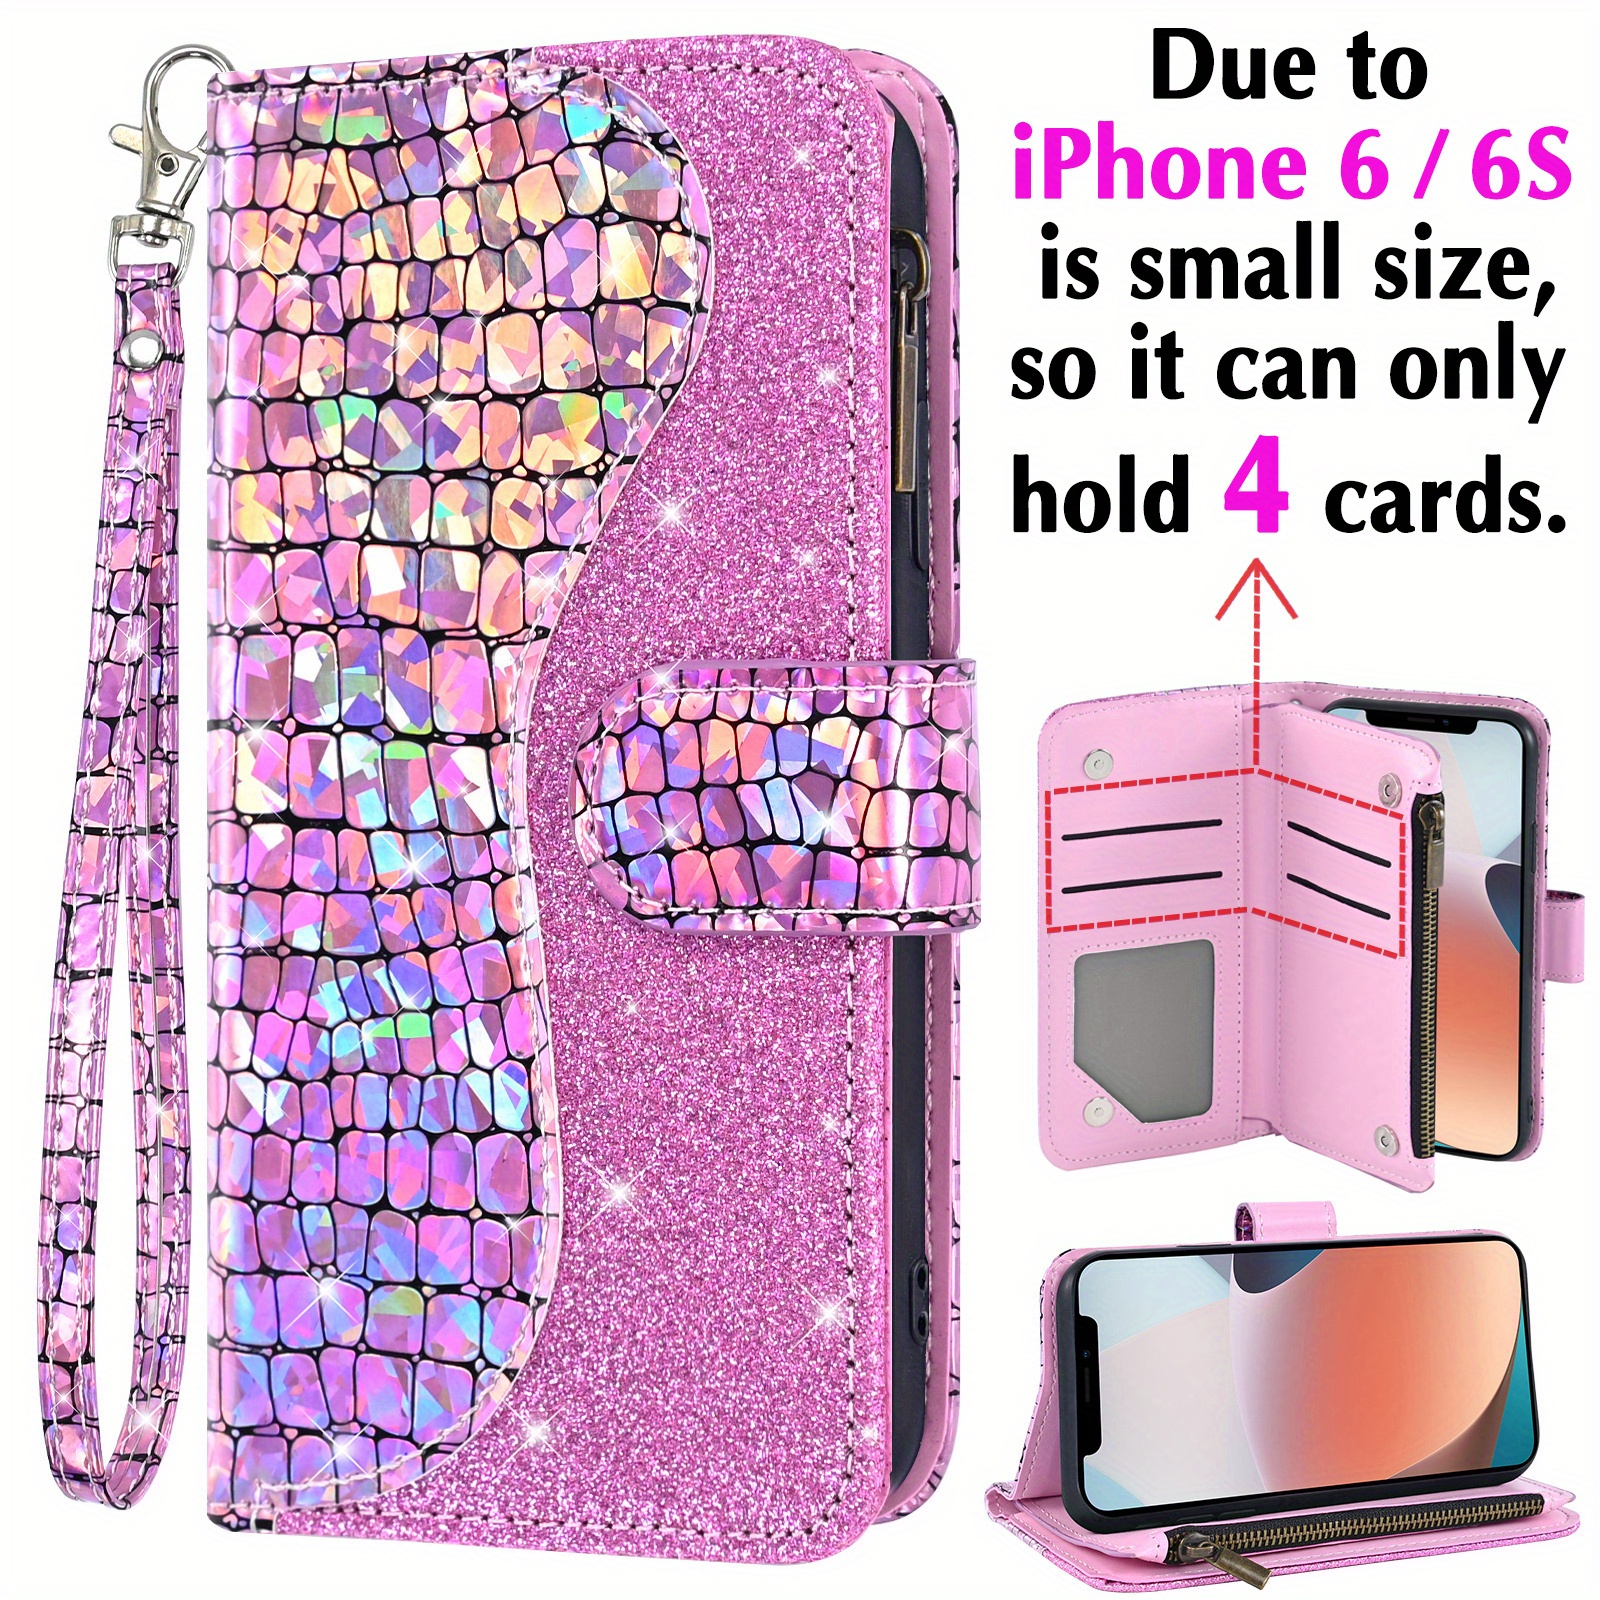 iPhone SE 2020 Case, iPhone 8 Case, iPhone 7 Case,DUEDUE Glitter